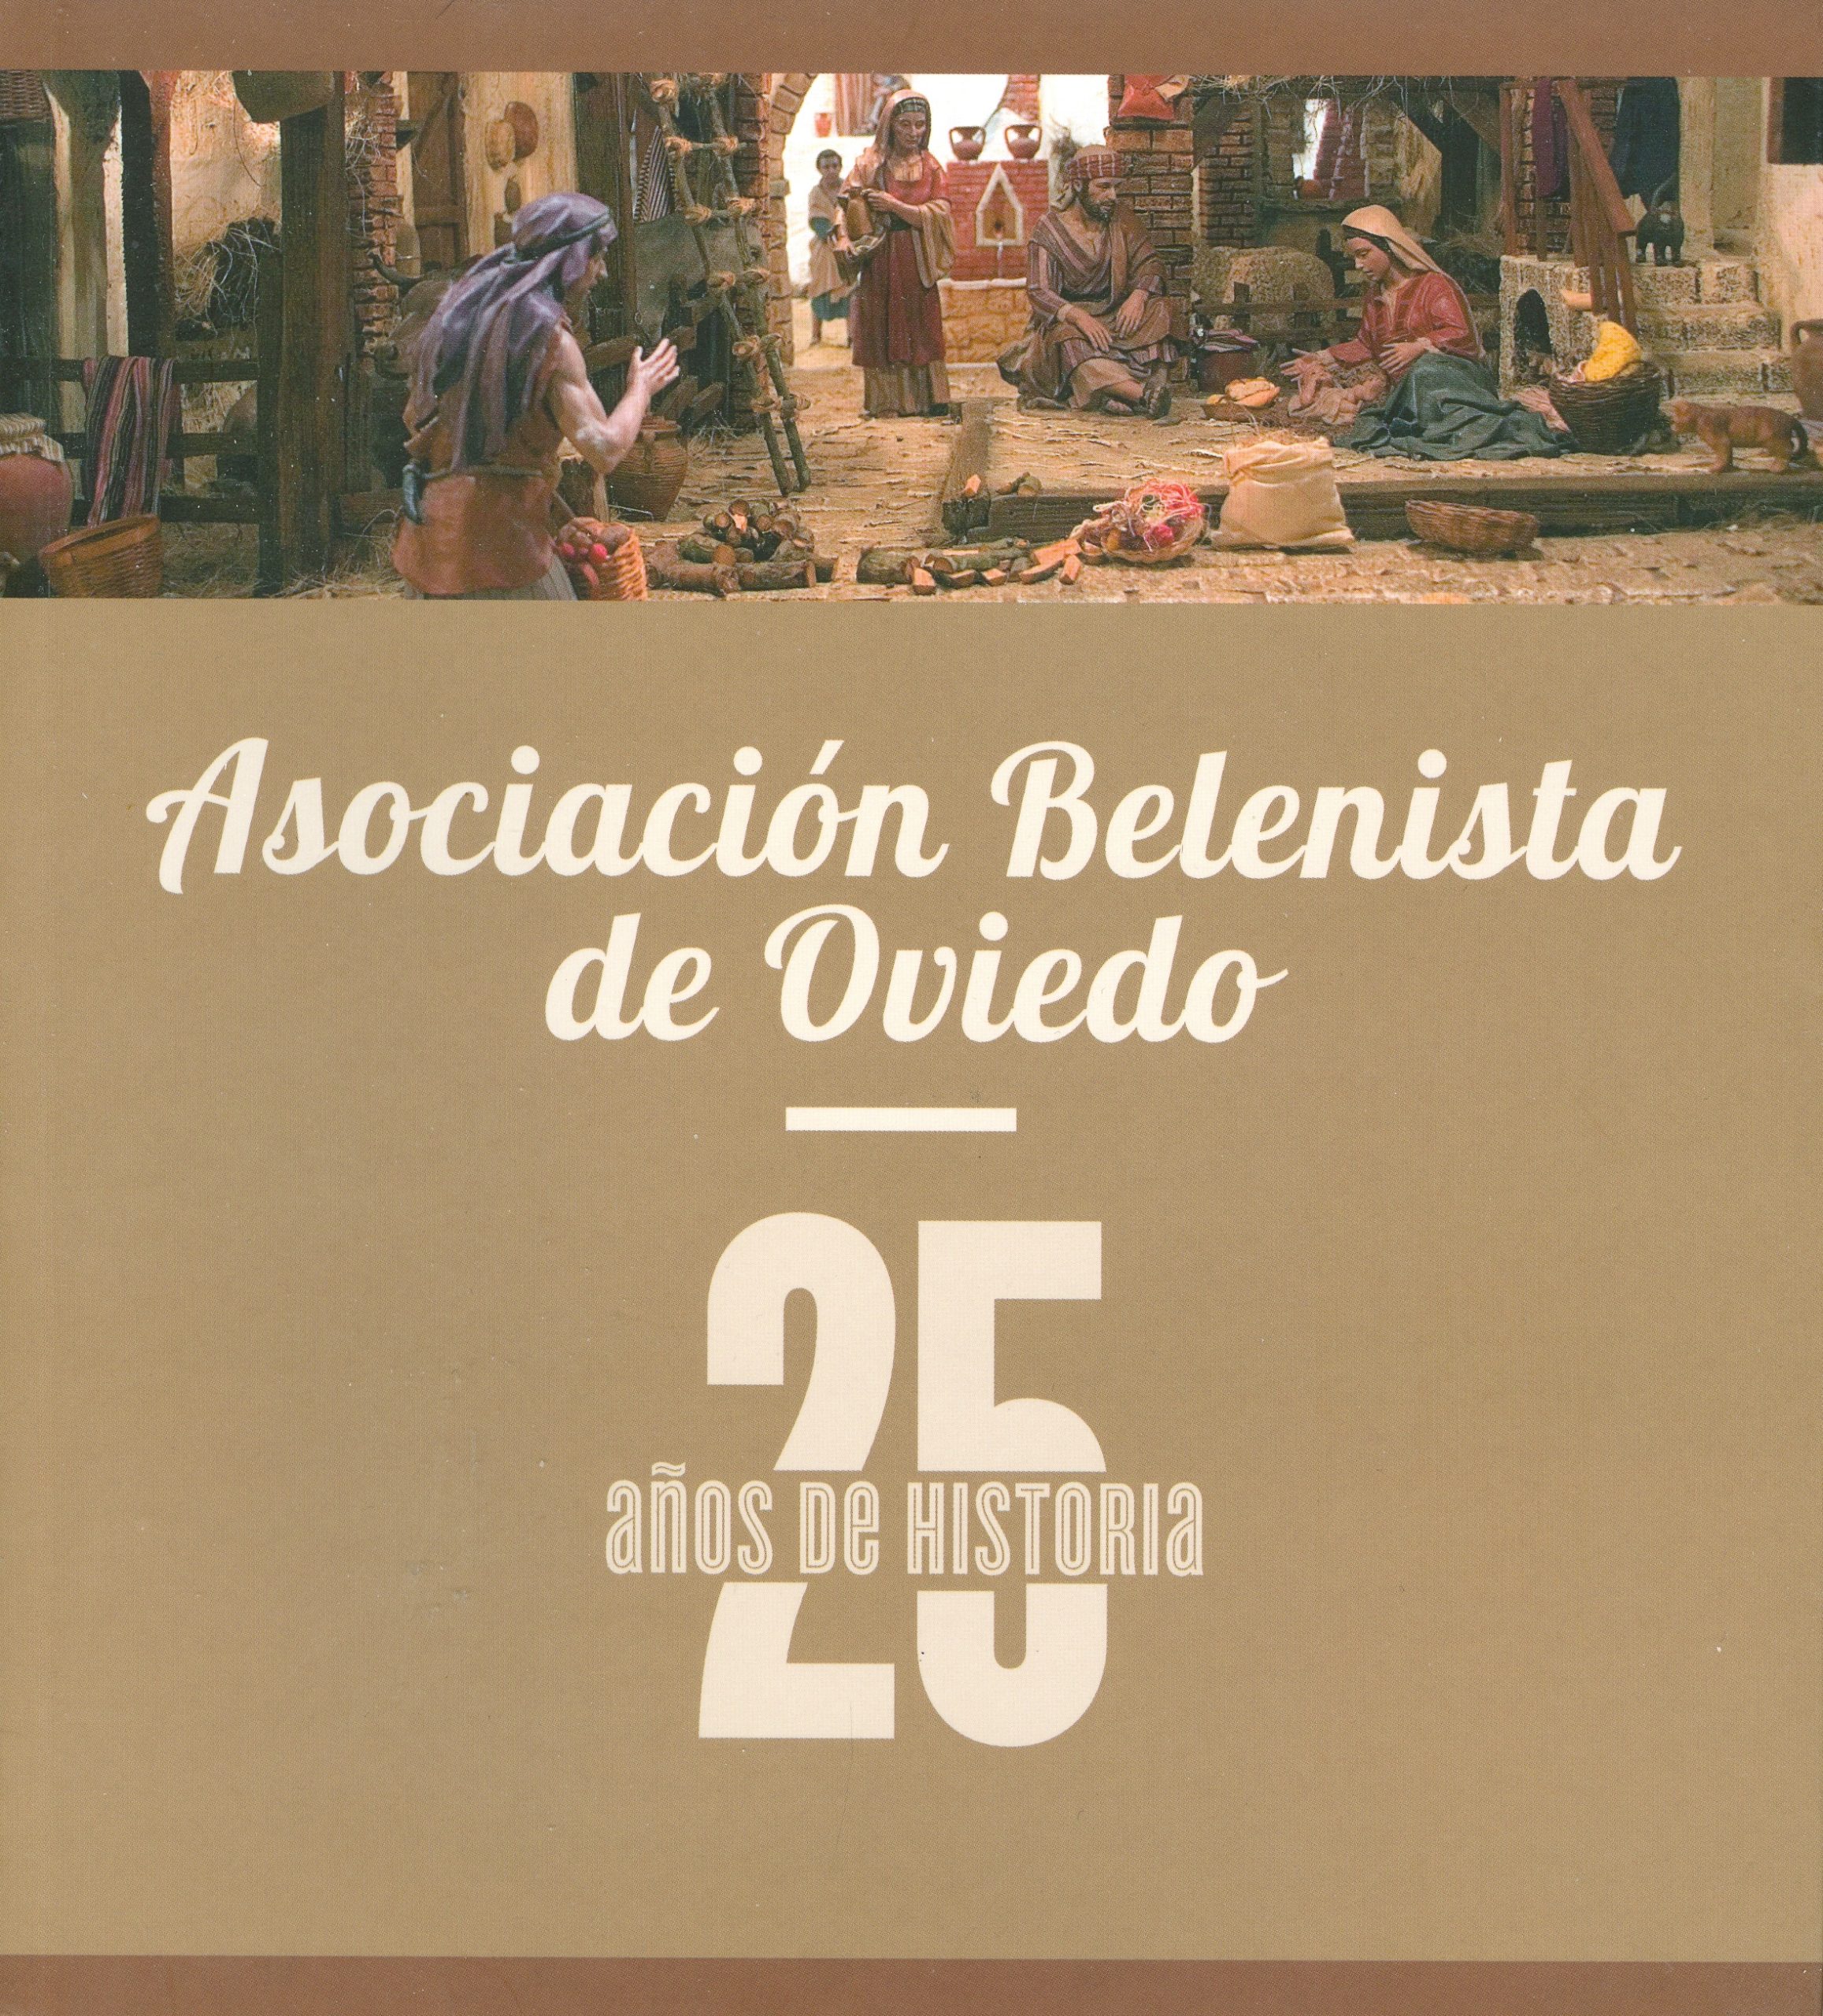 Portada del libro "Asociación Belenista de Oviedo. 25 años de historia" de María Teresa Martín, publicado por Ediciones Nobel SA